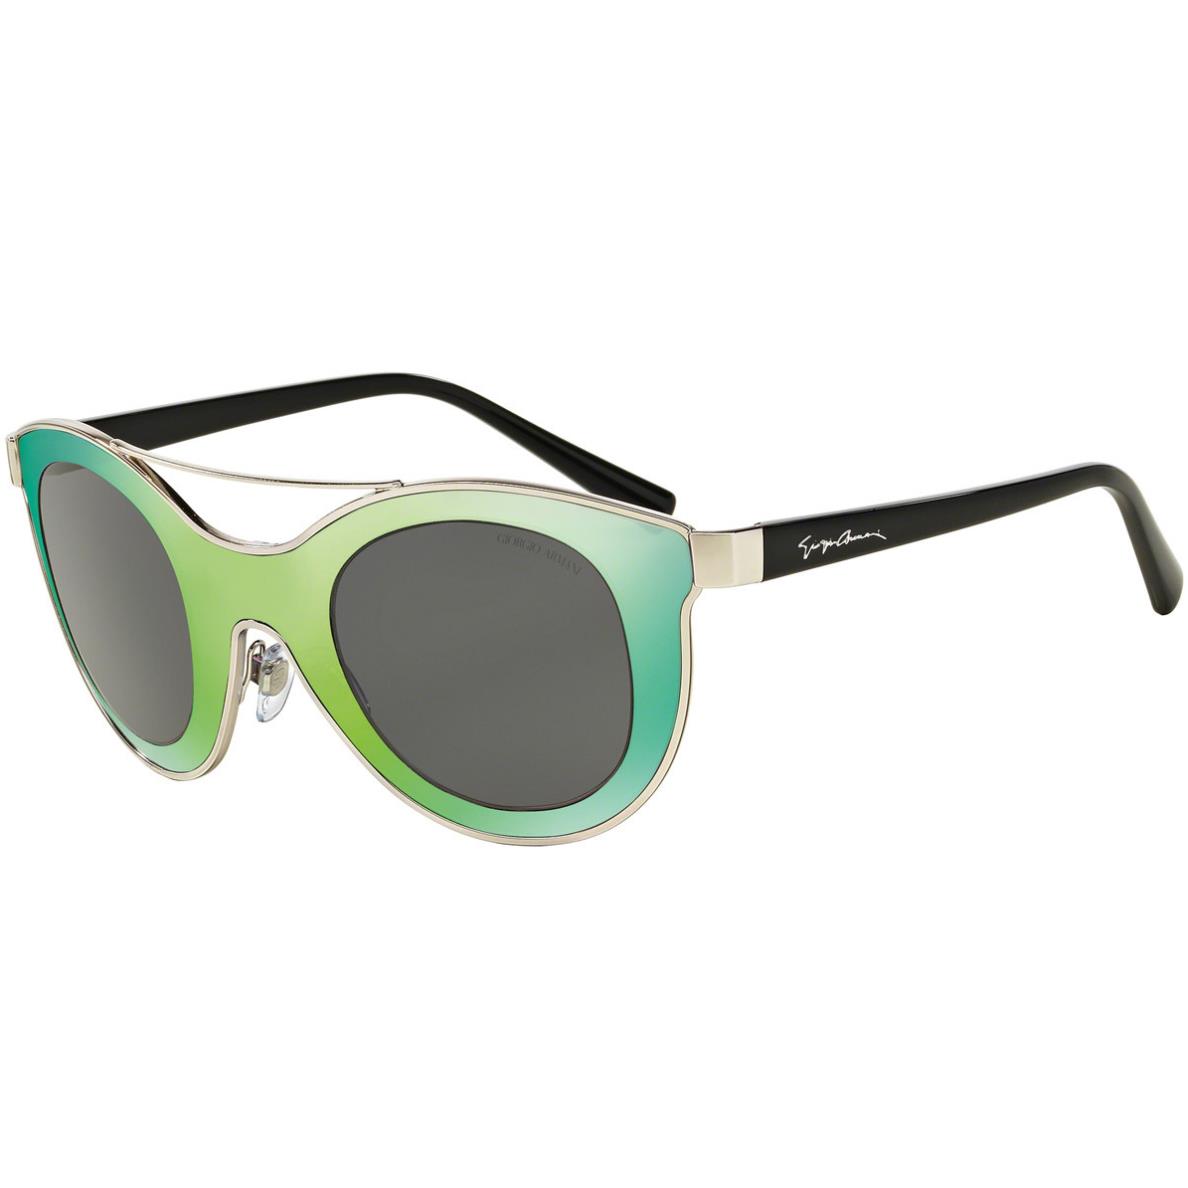 Giorgio Armani 6033 - 301587 Sunglasses Green Silver /grey 39mm